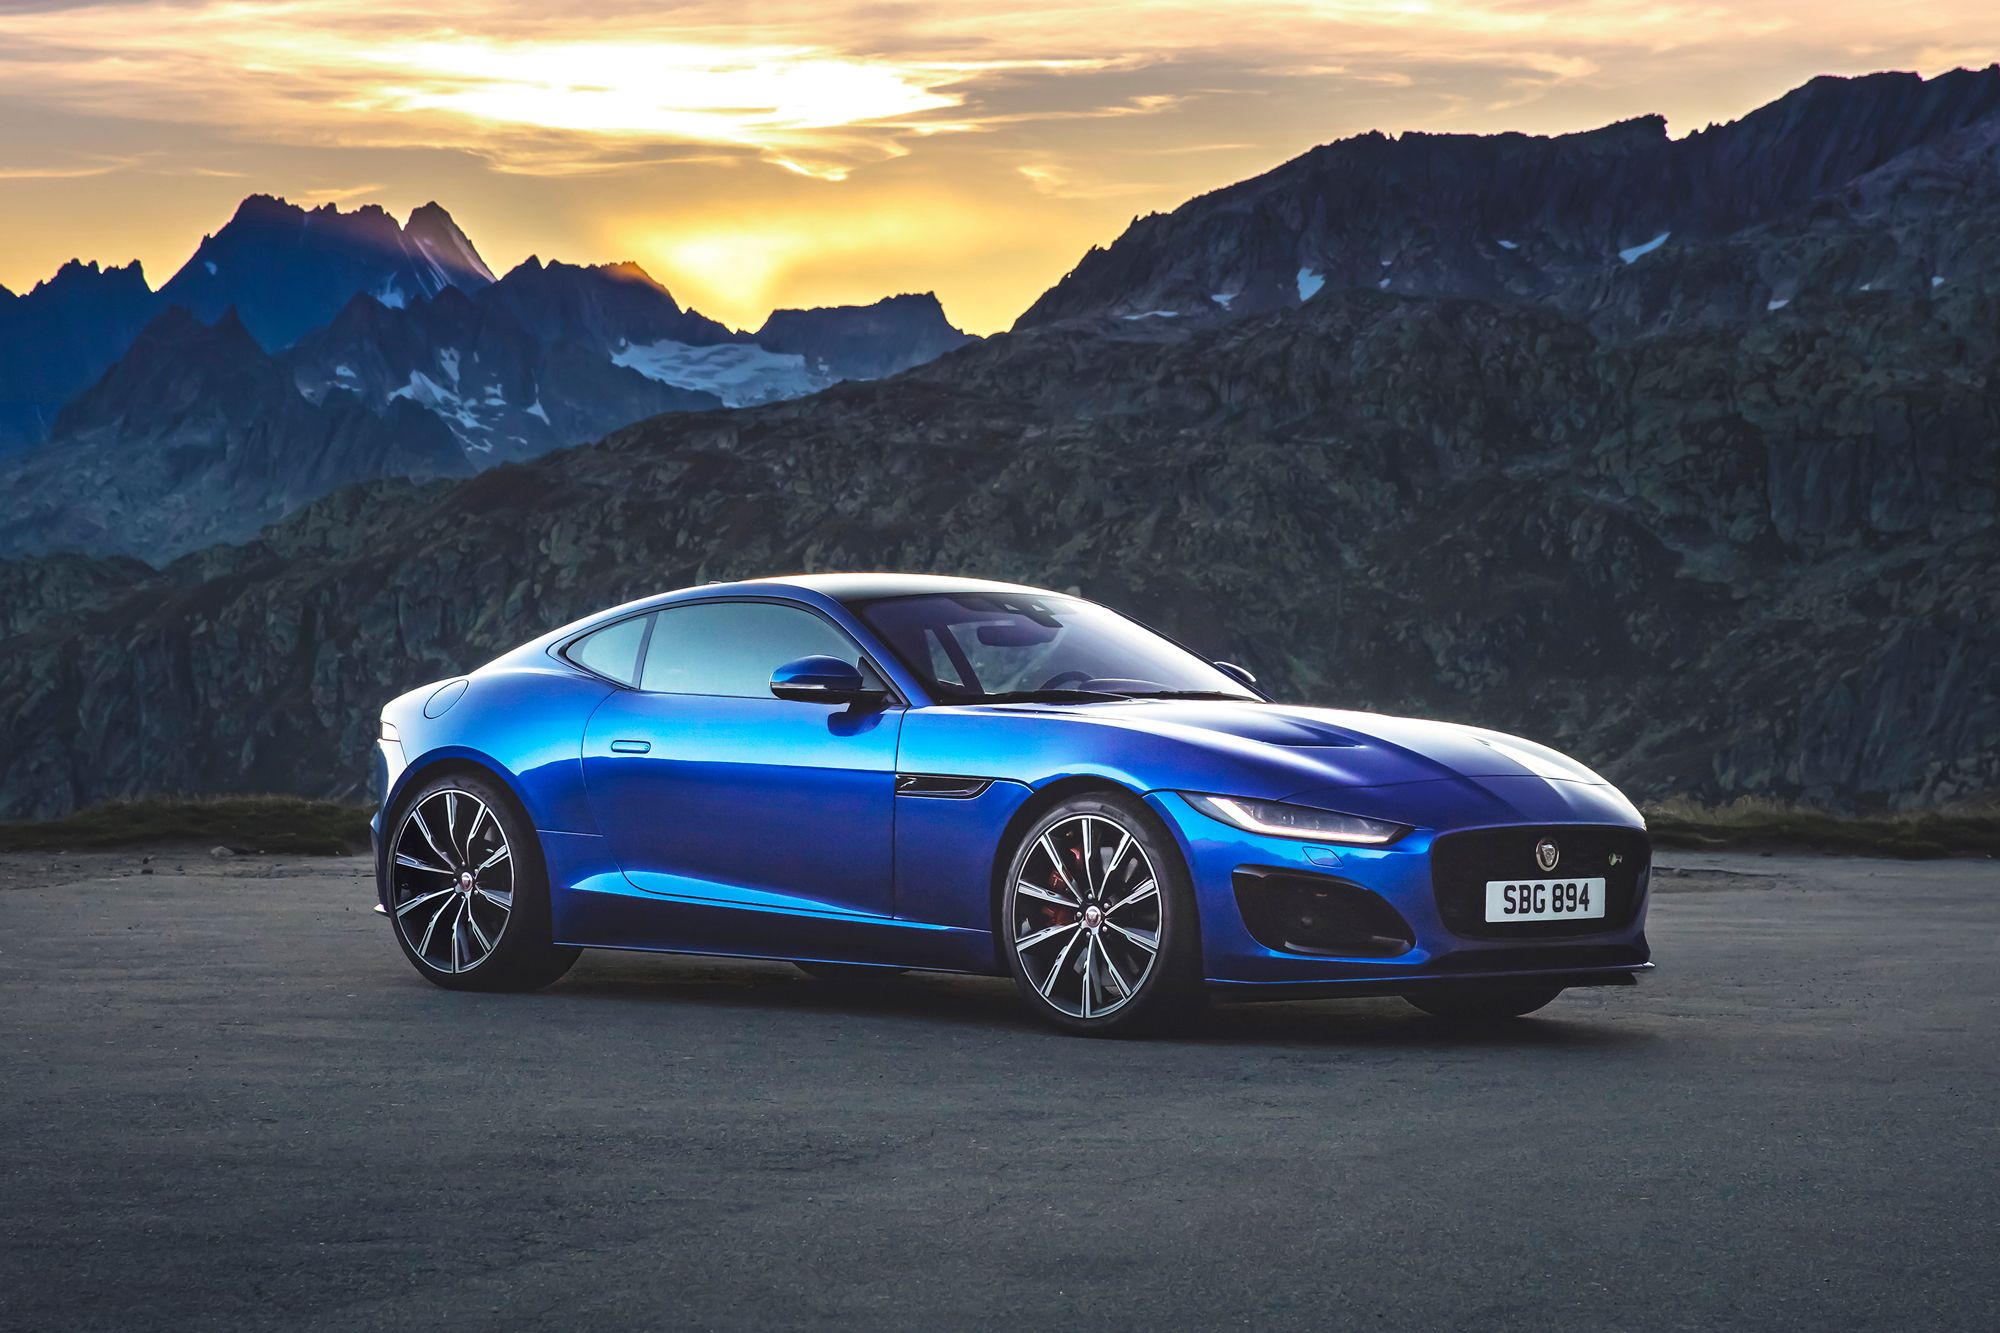 Hot 2021 Jaguar F-Type Unveiled, Car News